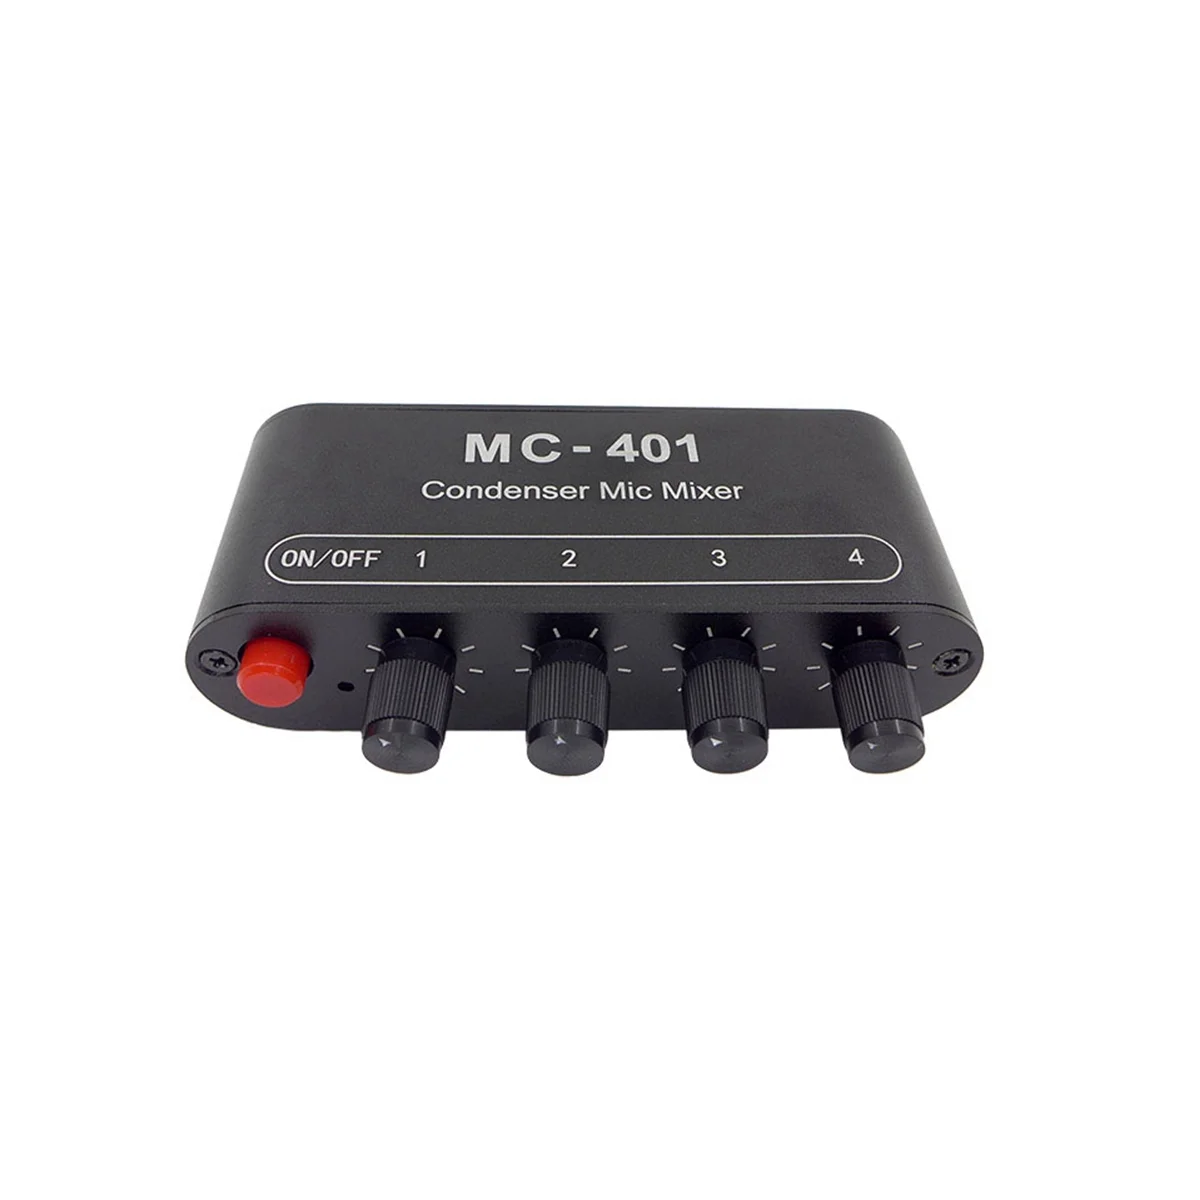 Novo Mini Mixer de Áudio Microfone de Condensador Mixer de Quatro-Em-Um Amplificador de Microfone para Computador Celular Placa de Som